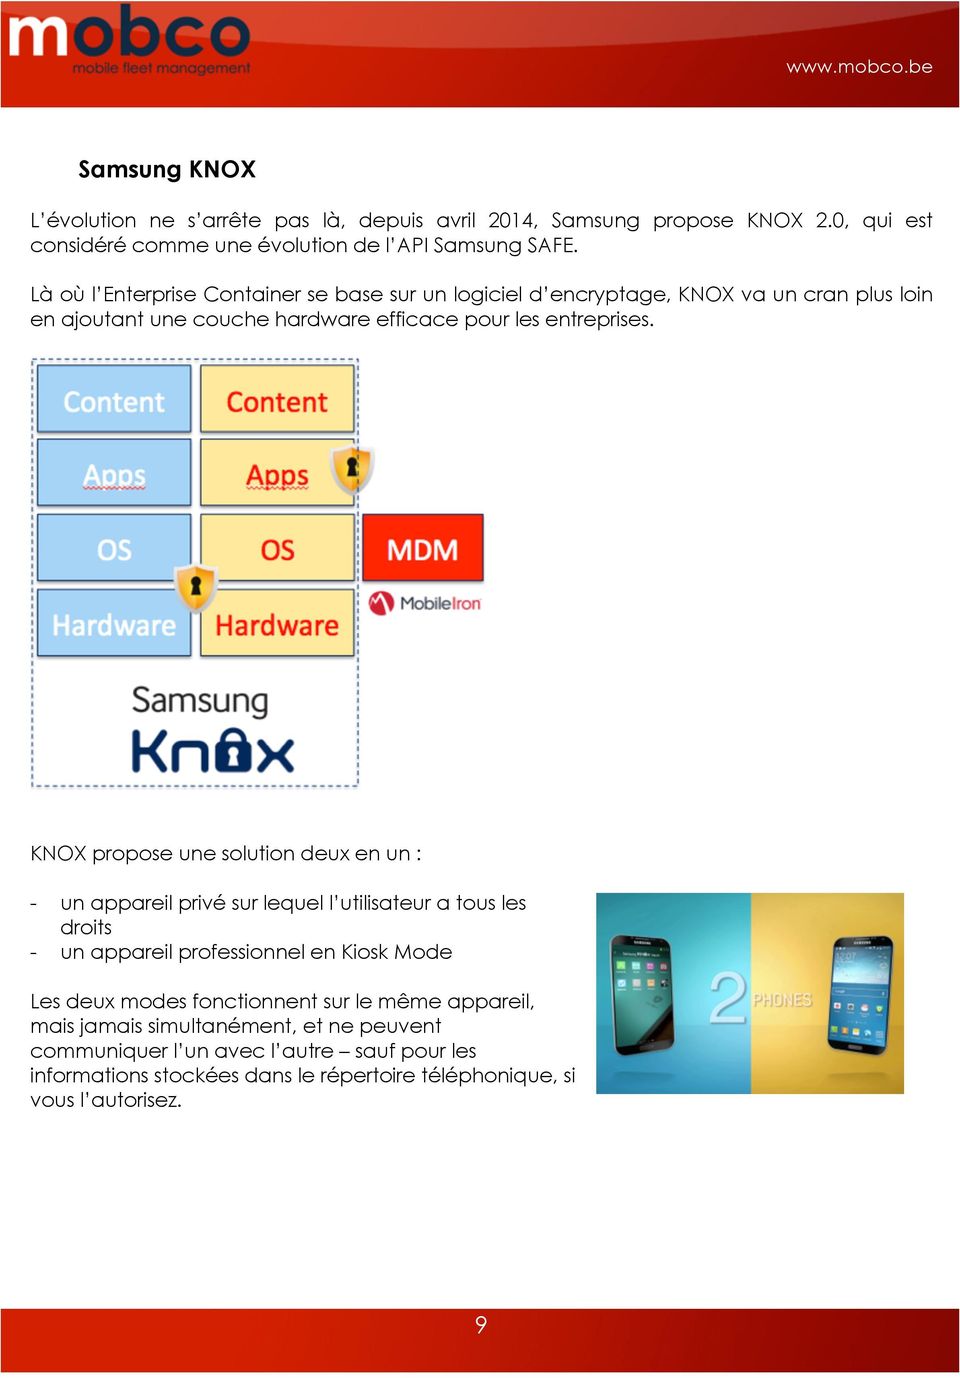 KNOX propose une solution deux en un : - un appareil privé sur lequel l utilisateur a tous les droits - un appareil professionnel en Kiosk Mode Les deux modes